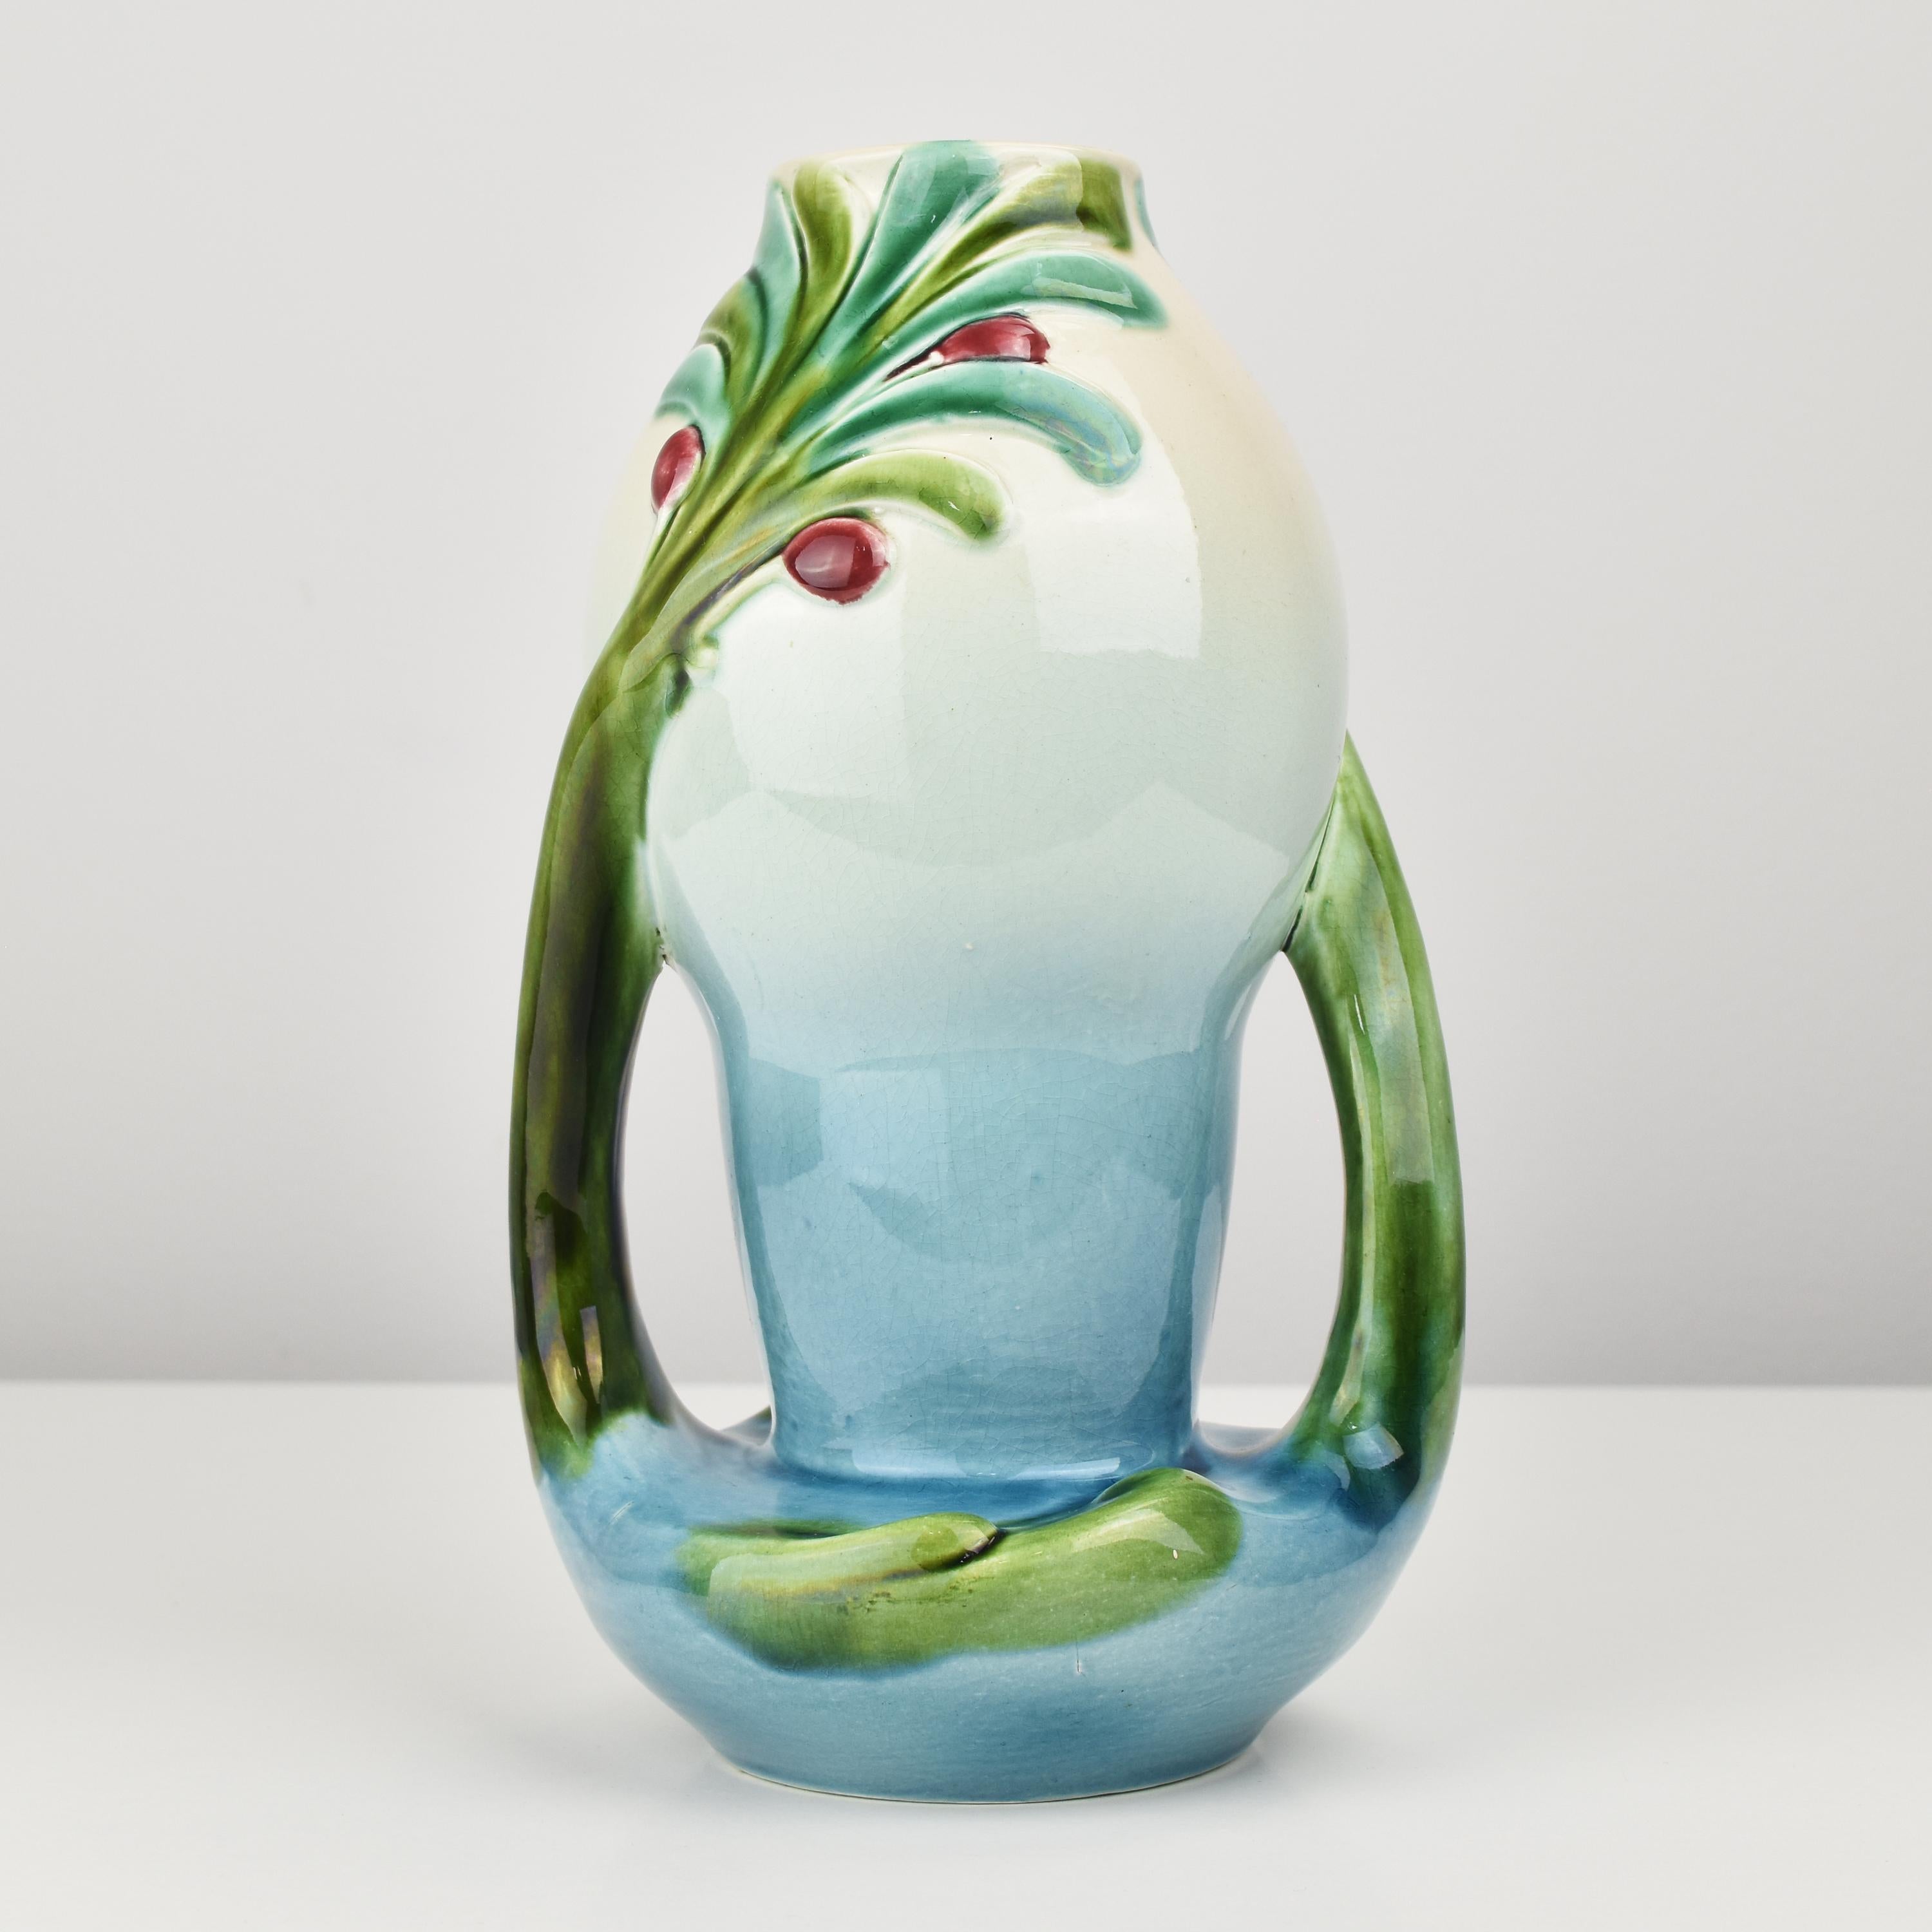 Ce vase ancien à double anse en céramique majolique présente un magnifique motif floral en relief et a été fabriqué par le célèbre fabricant français Sarreguemines vers 1900.
Il s'agit d'une magnifique pièce d'Art nouveau français qui compléterait